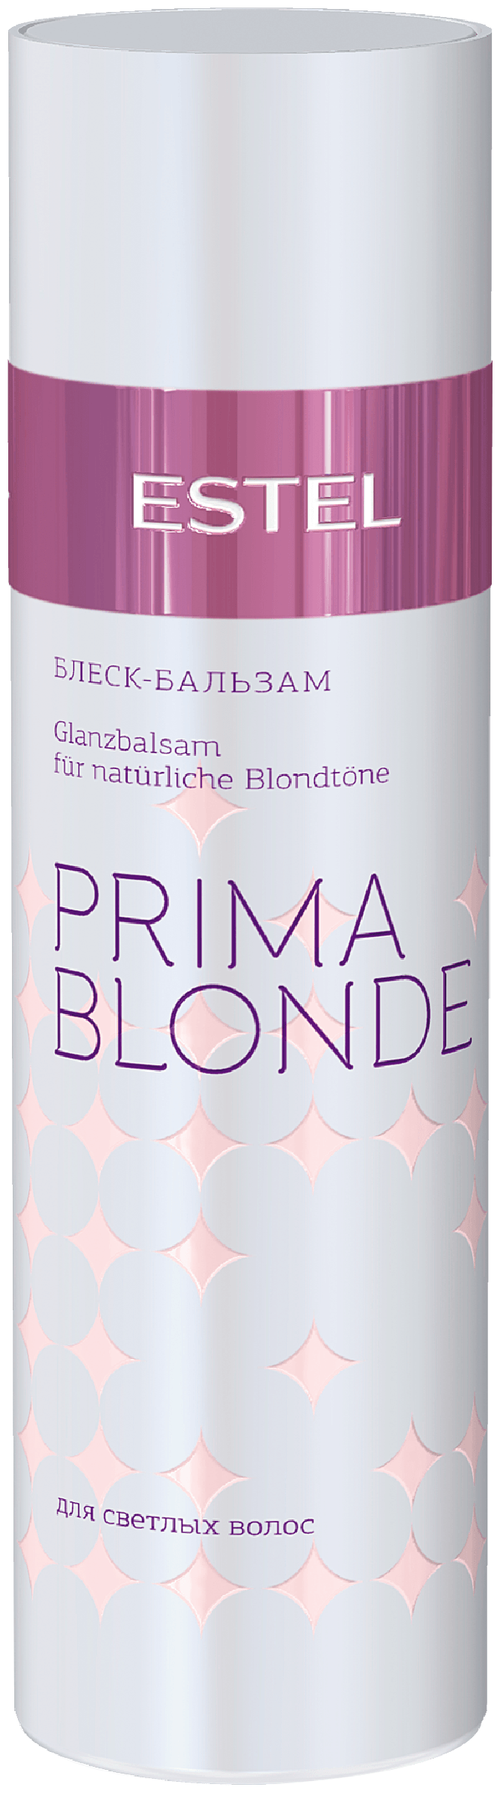 ESTEL блеск-бальзам Prima Blonde для светлых волос, 200 мл